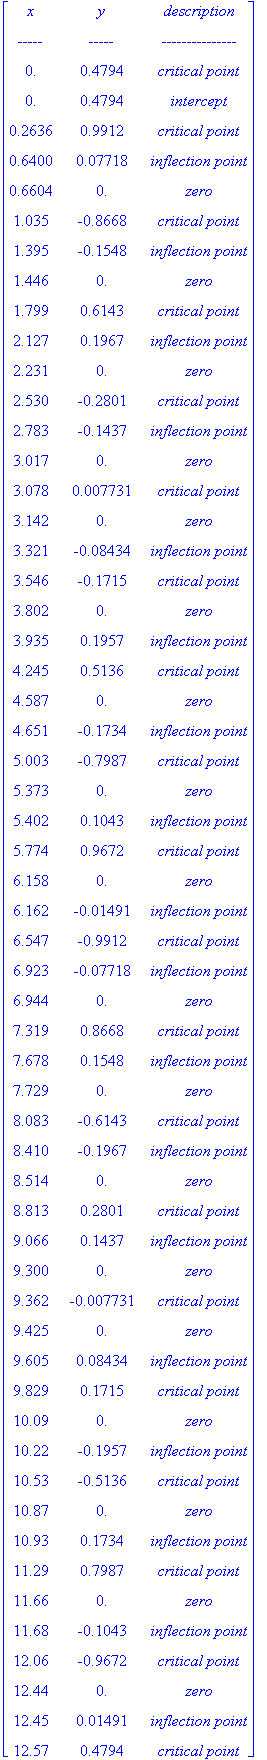 matrix([[x, y, `description`], [`-----`, `-----`, `---------------`], [0., .4794, `critical point`], [0., .4794, intercept], [.2636, .9912, `critical point`], [.6400, .7718e-1, `inflection point`], [.6...